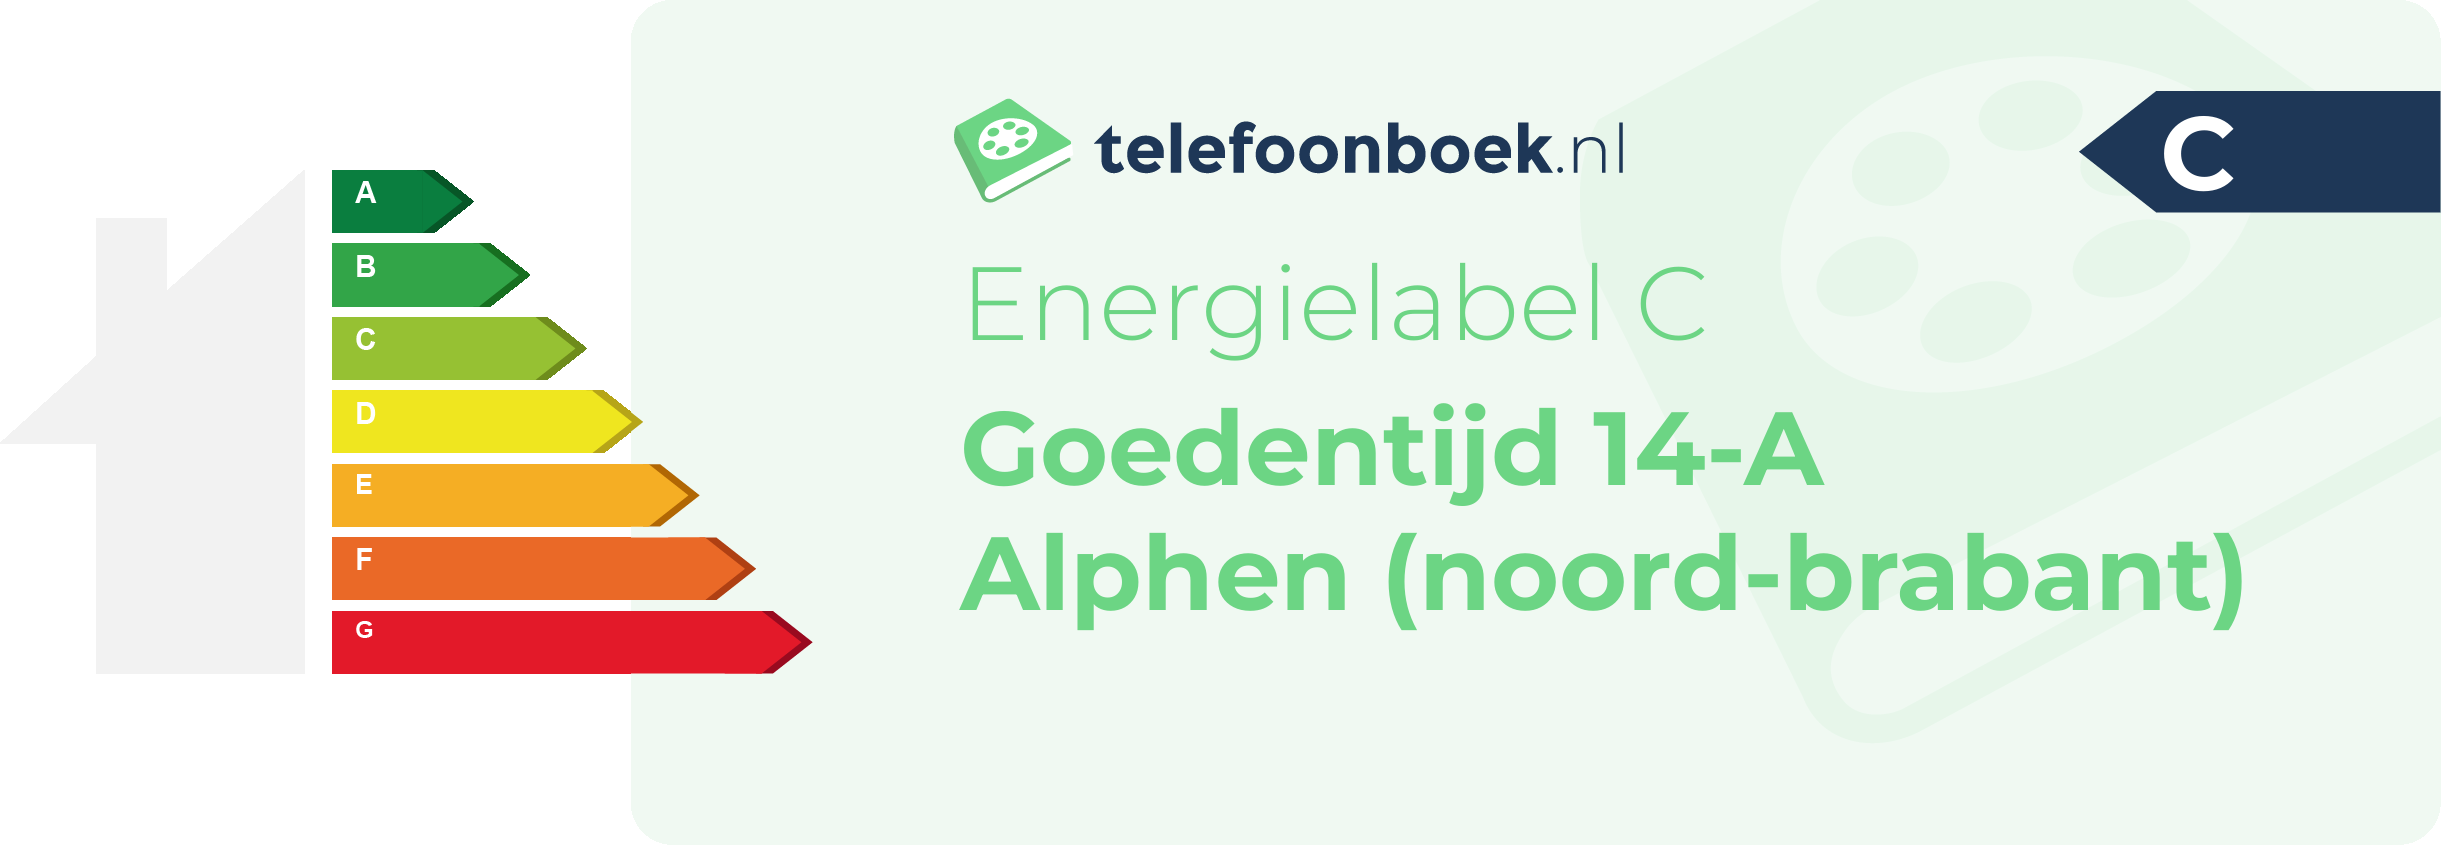 Energielabel Goedentijd 14-A Alphen (Noord-Brabant)